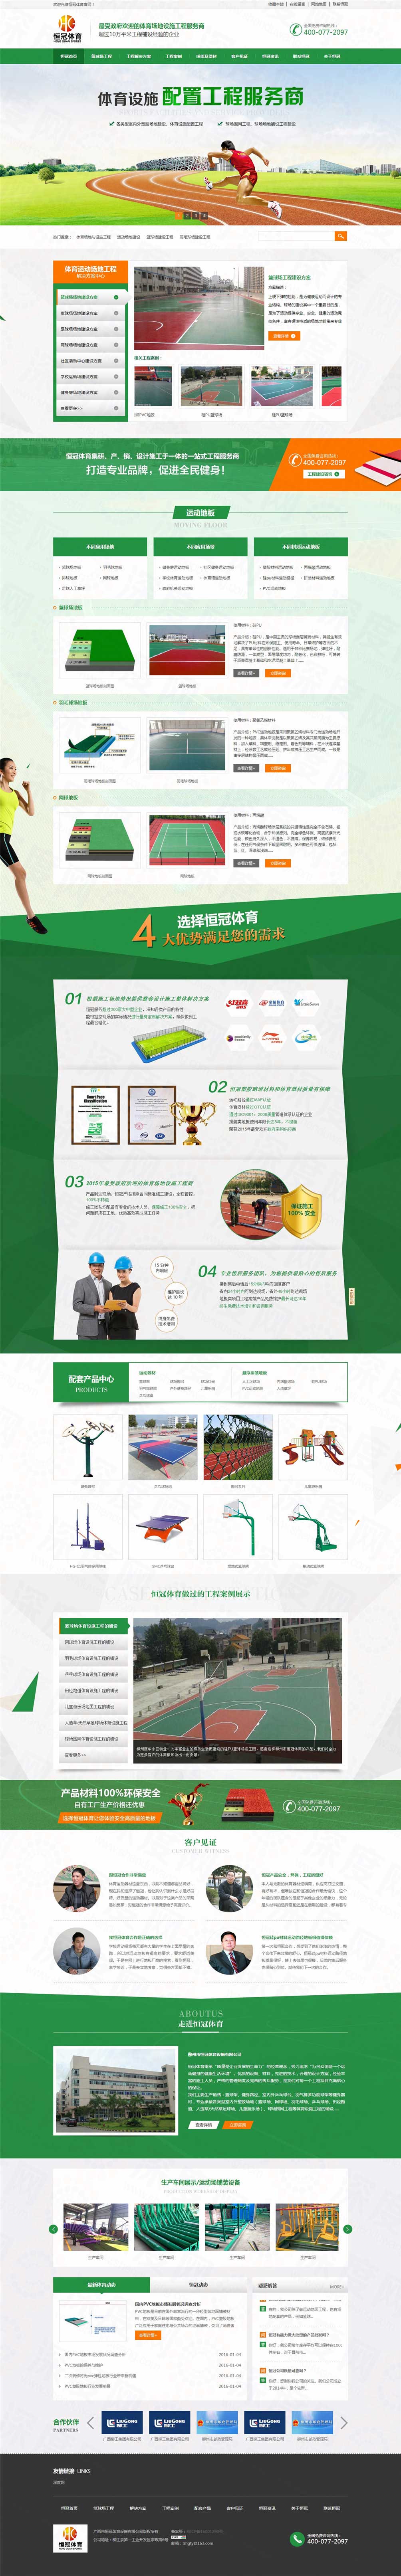 柳州市恒冠体育设施营销型网站案例